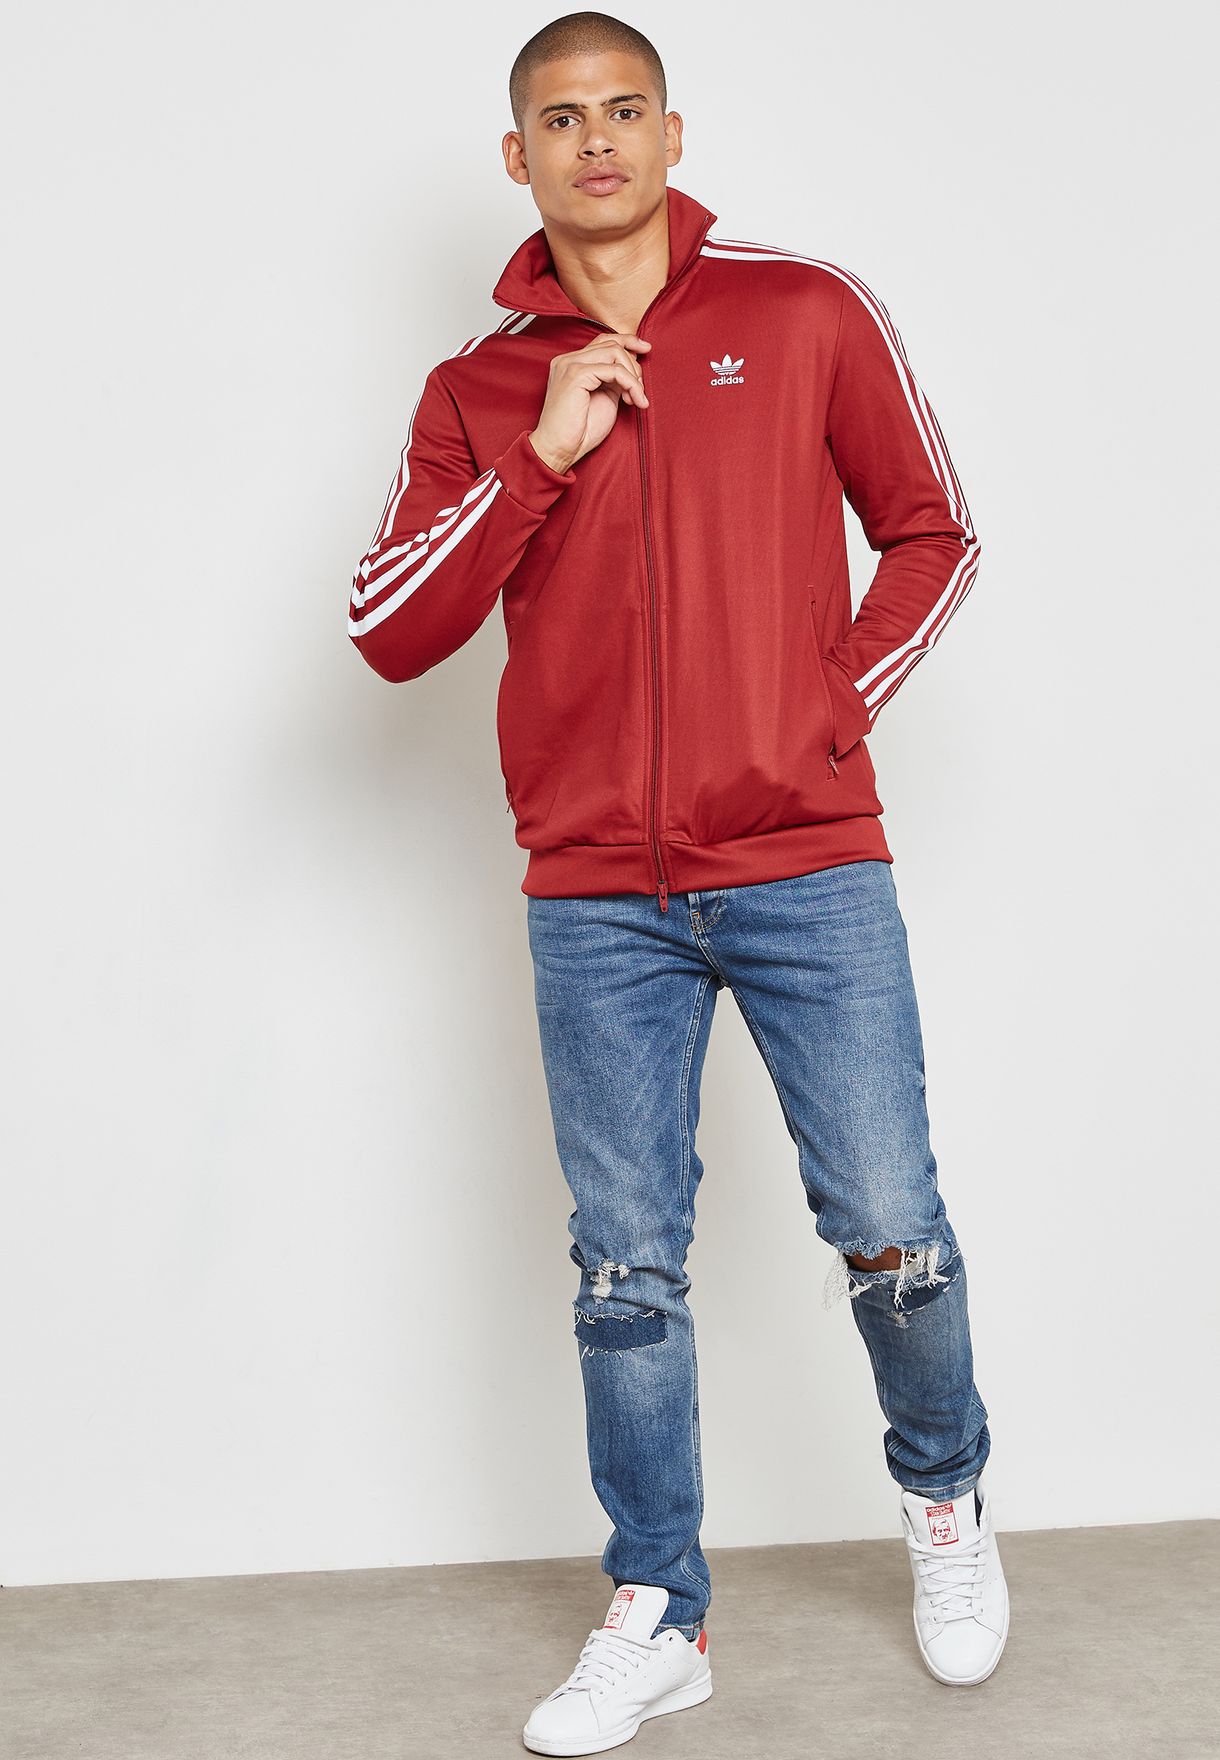 adidas beckenbauer jacket maroon